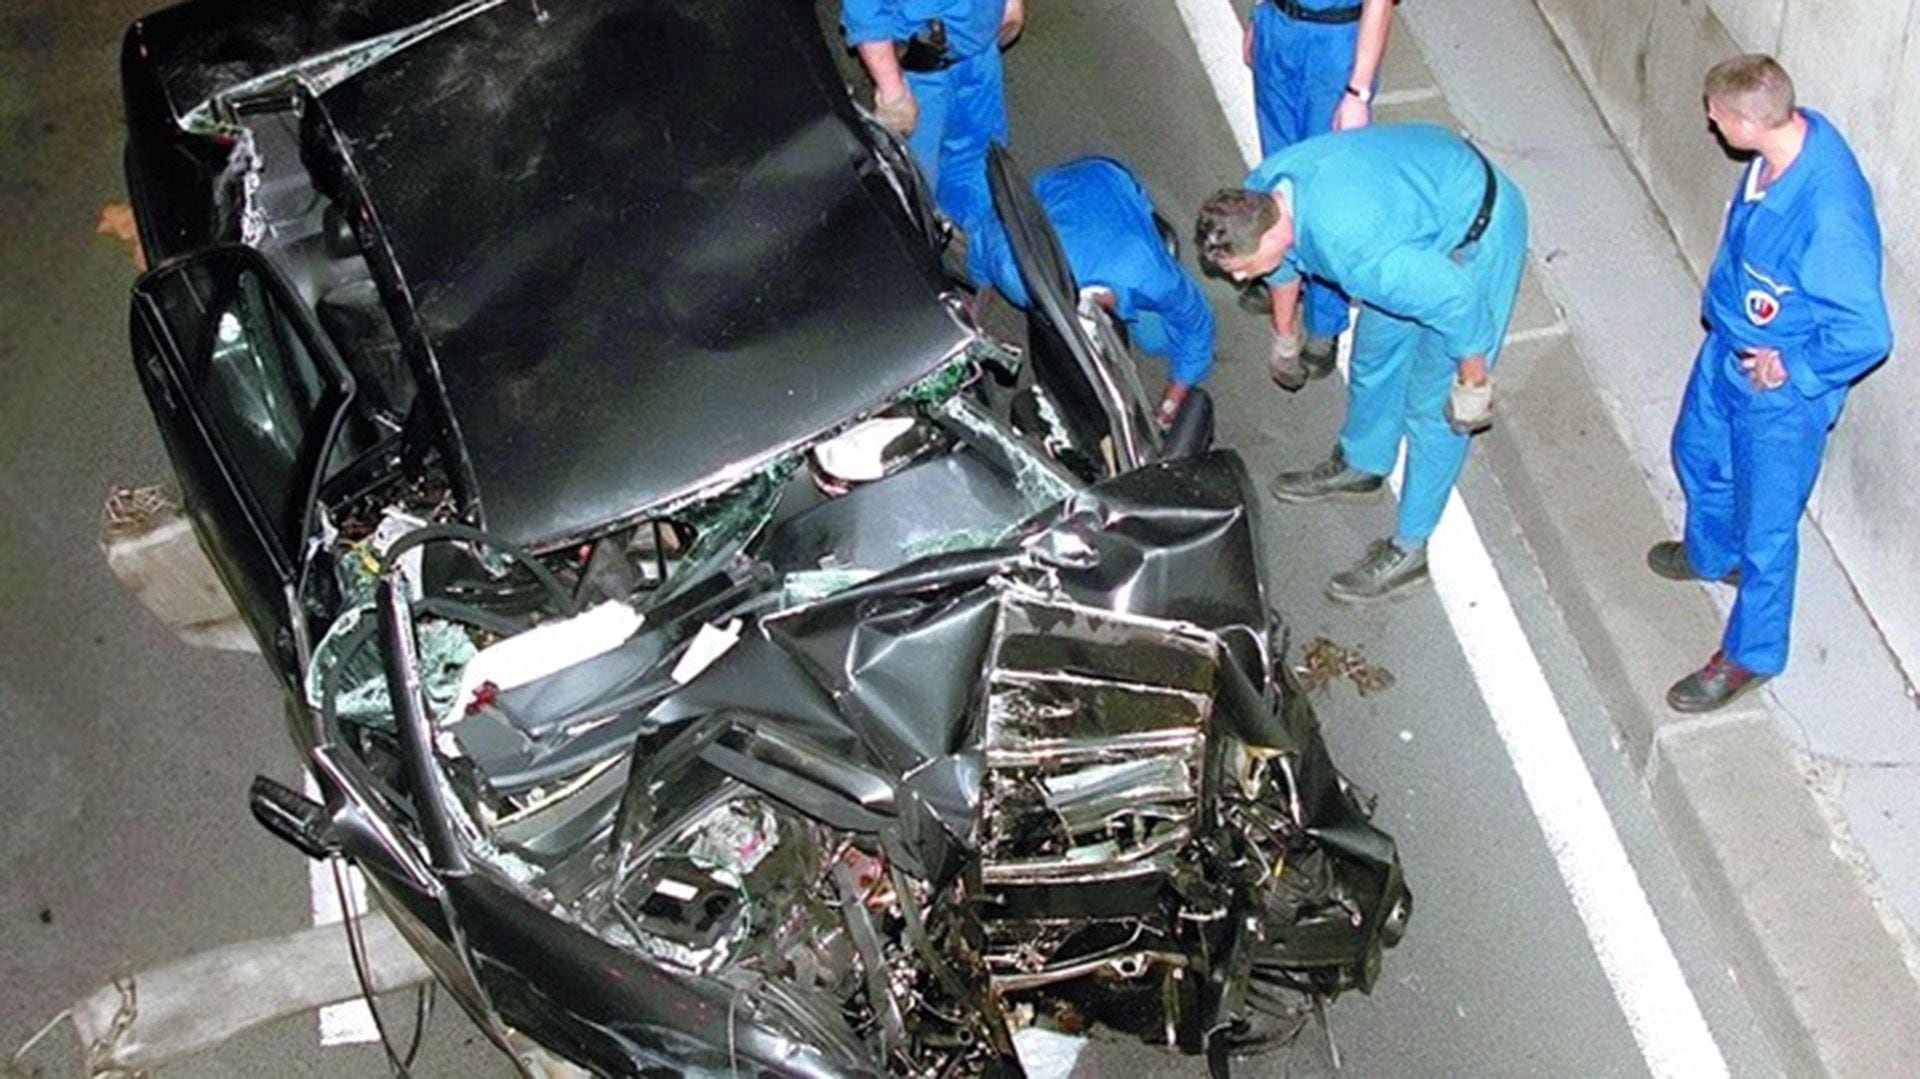 Diana de Gales se mató en un accidente automovilístico junto con Dodi Al-Fayed, su pareja, el 31 de agosto de 1997, en París (AP)